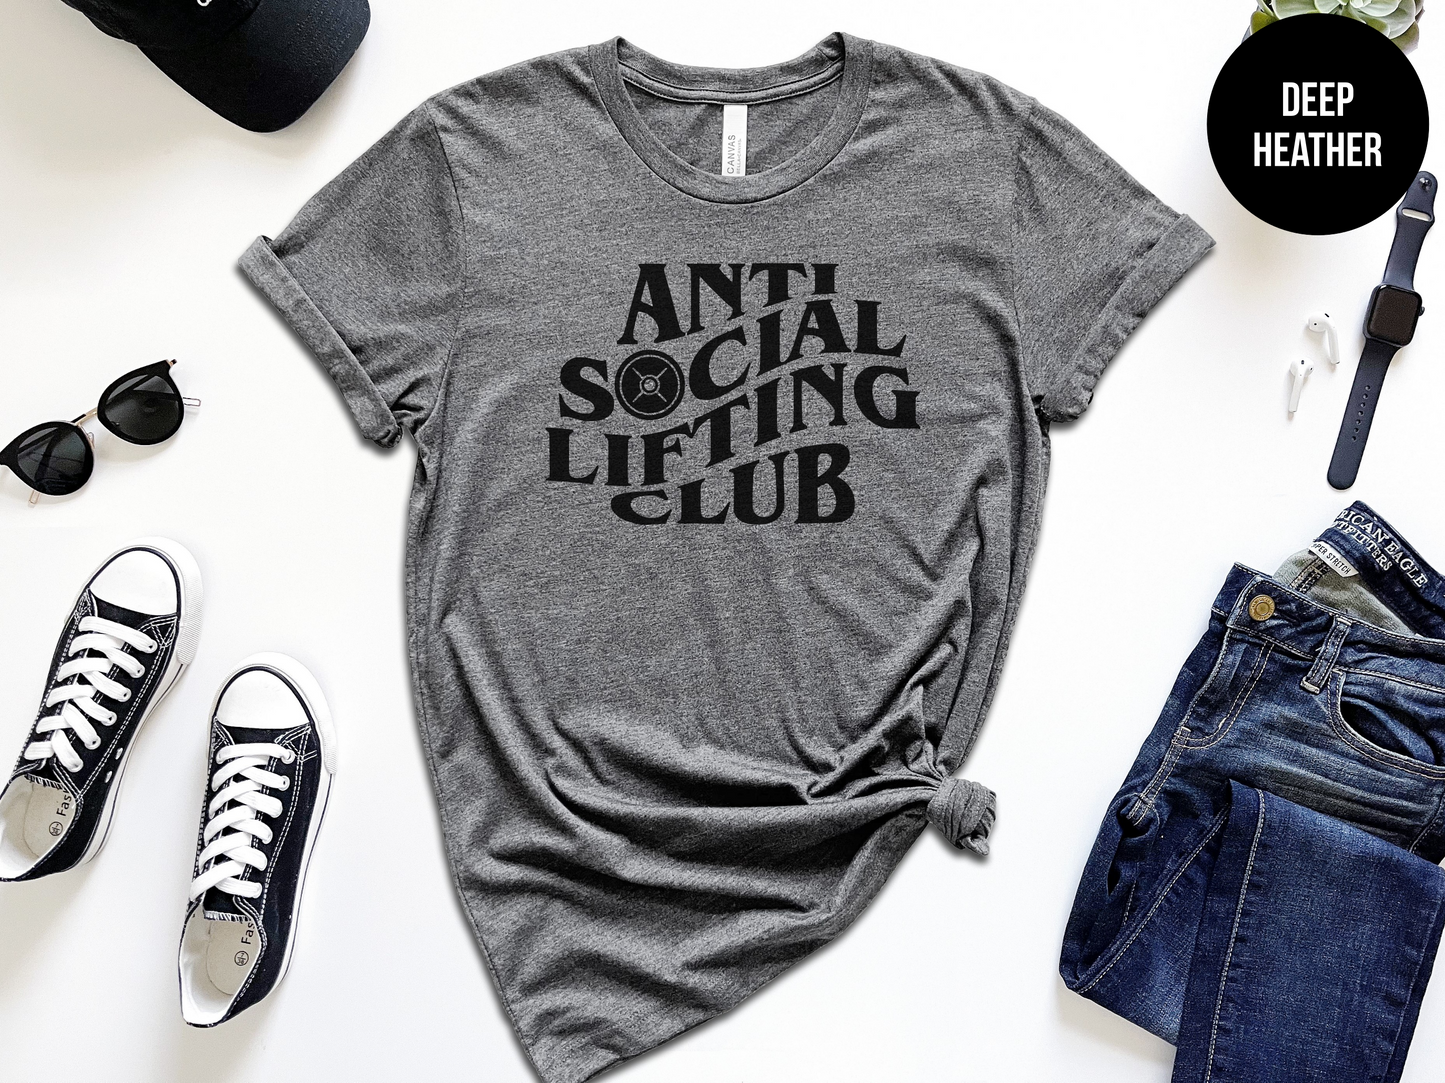 Anti-Social Lifting Club